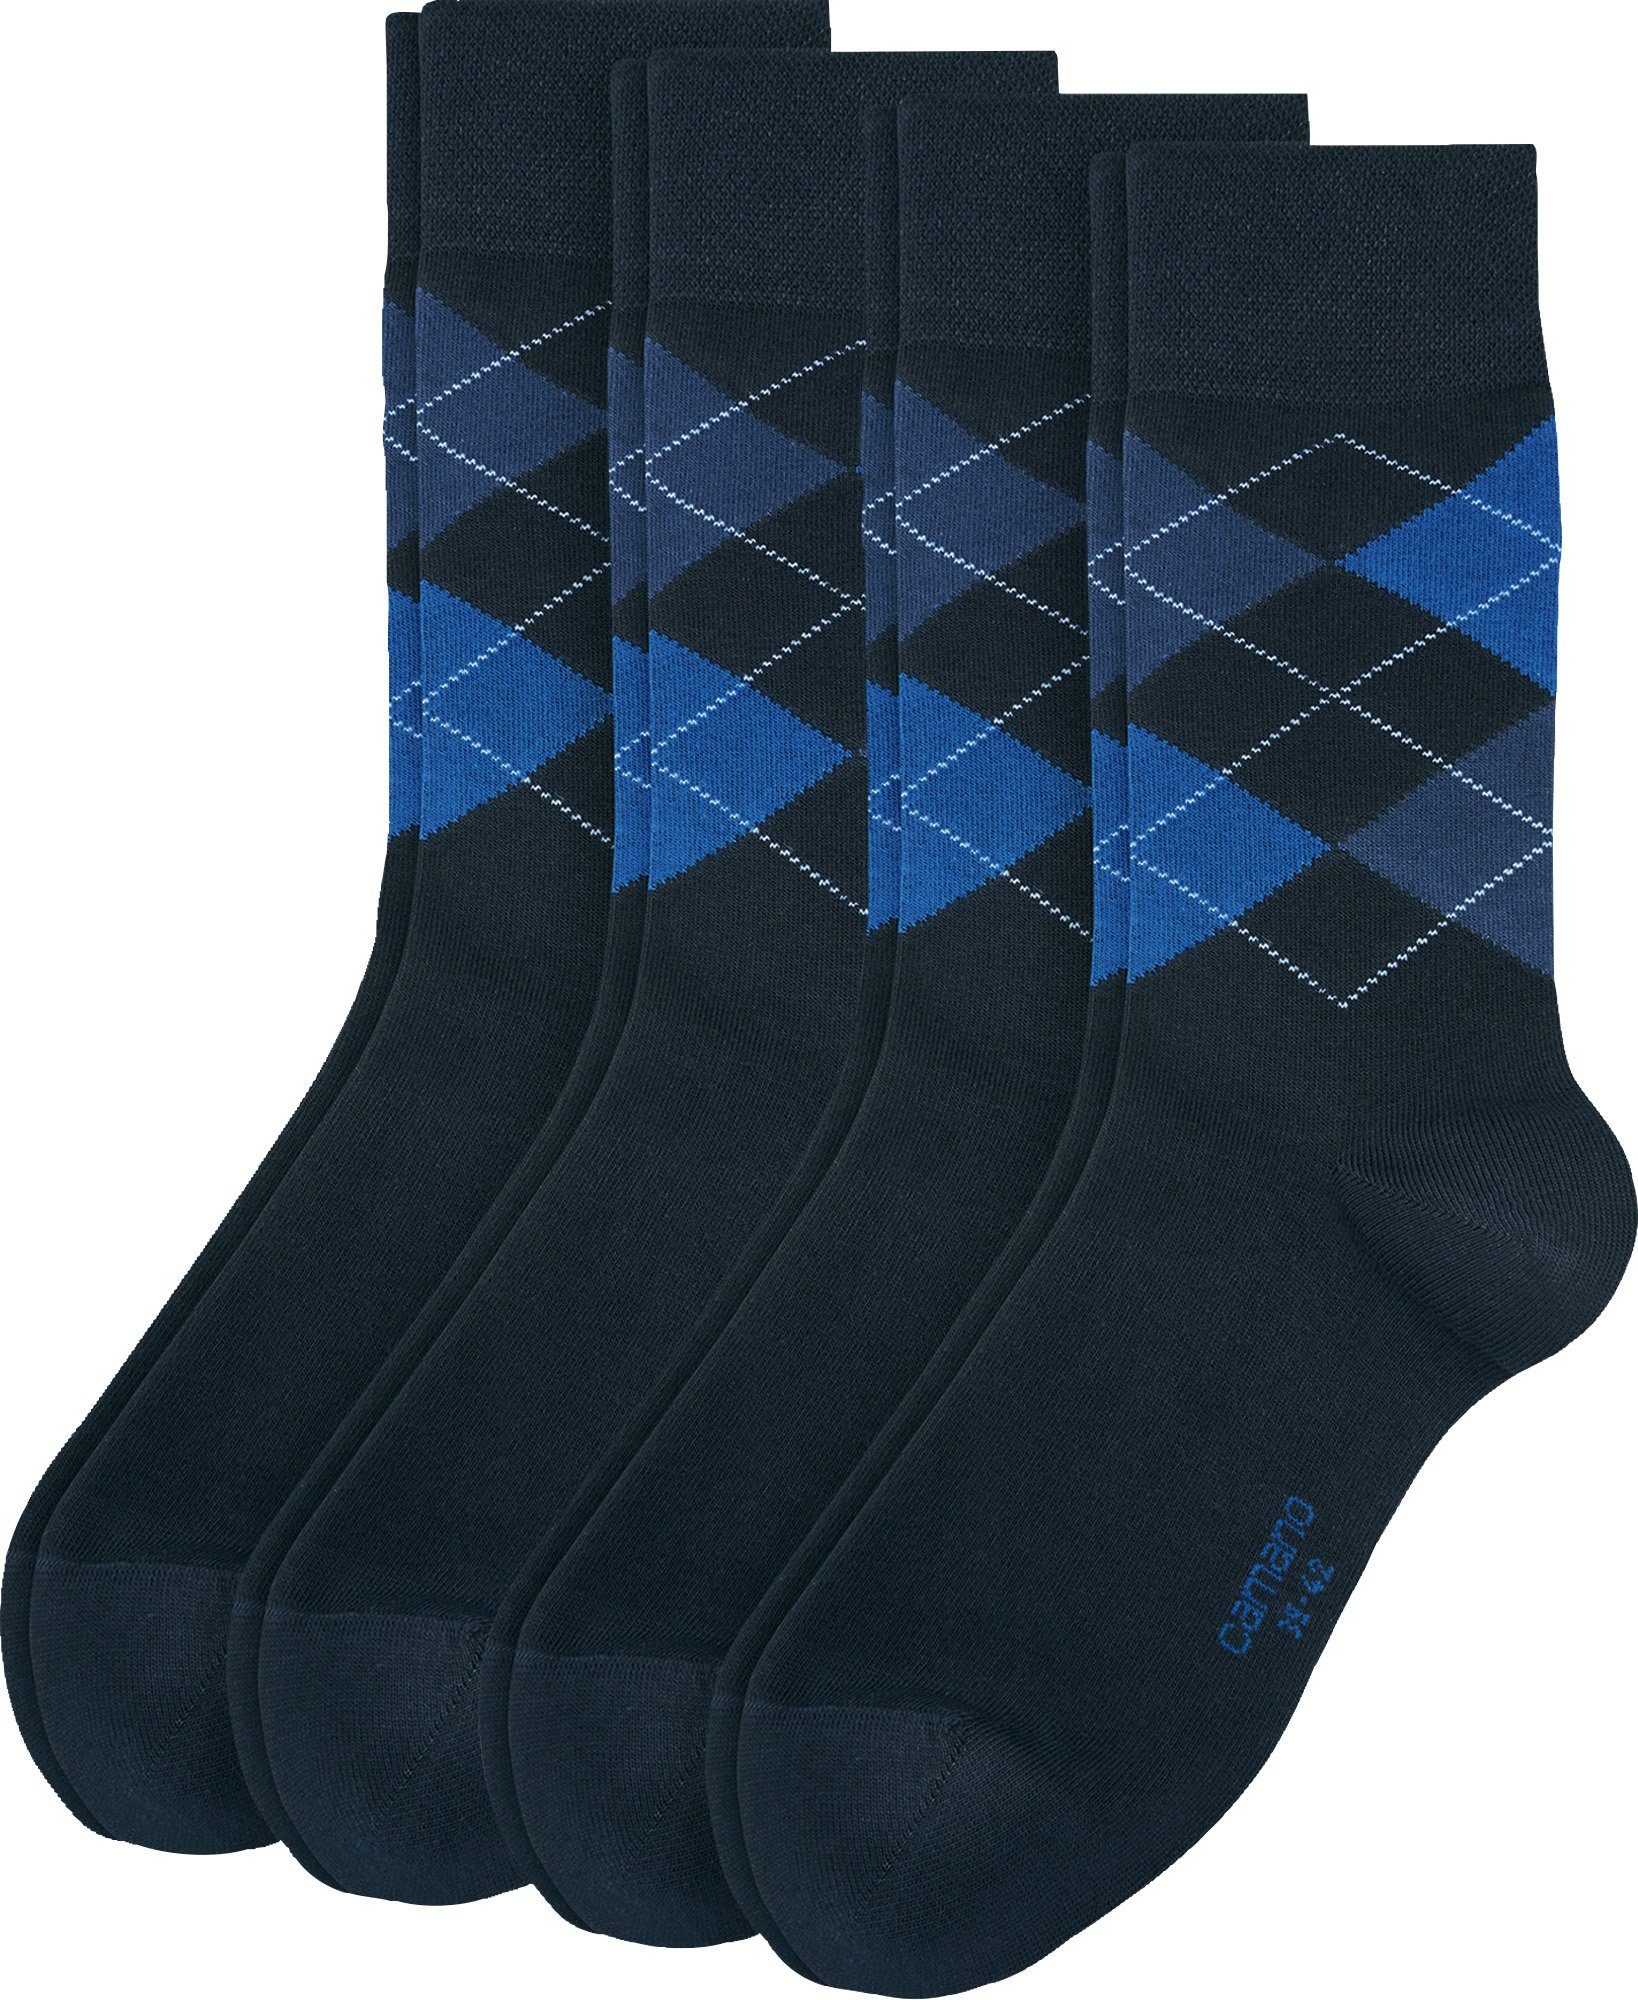 Socken Paar 4 gemustert blau Herren-Socken Camano